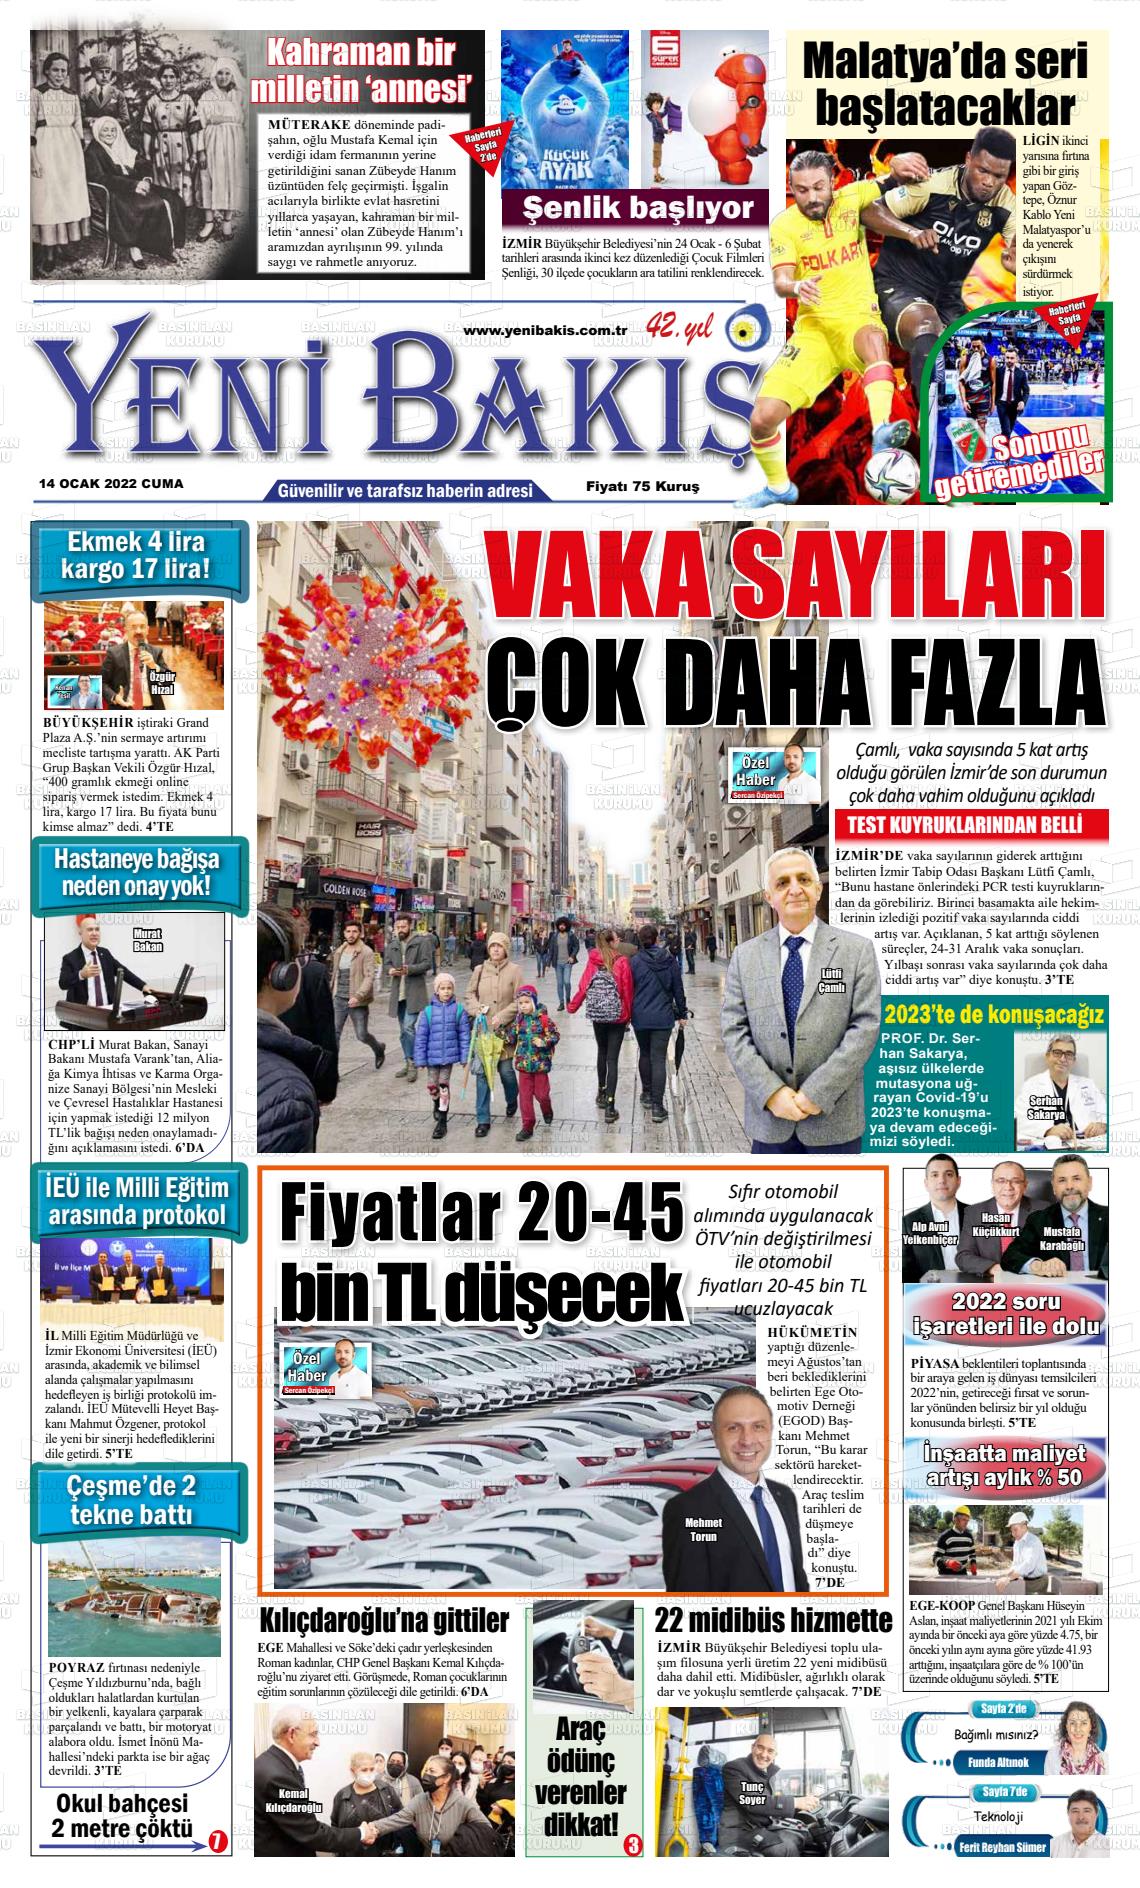 14 Ocak 2022 Yeni Bakış Gazete Manşeti